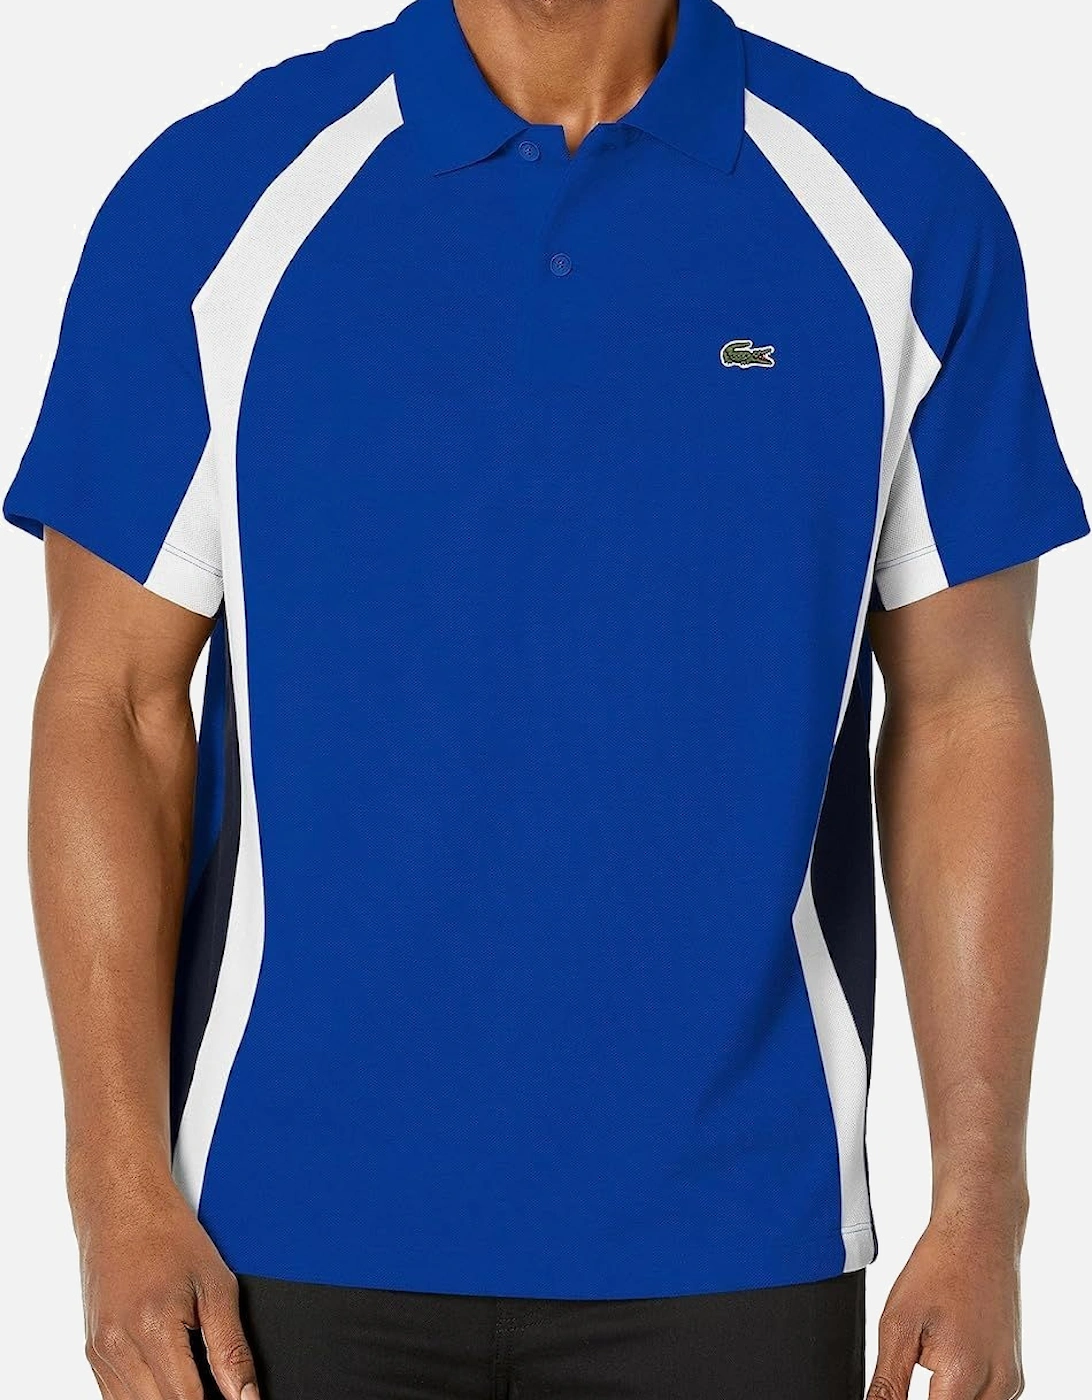 Mens Mini-pique Colourblock Polo Shirt, 7 of 6